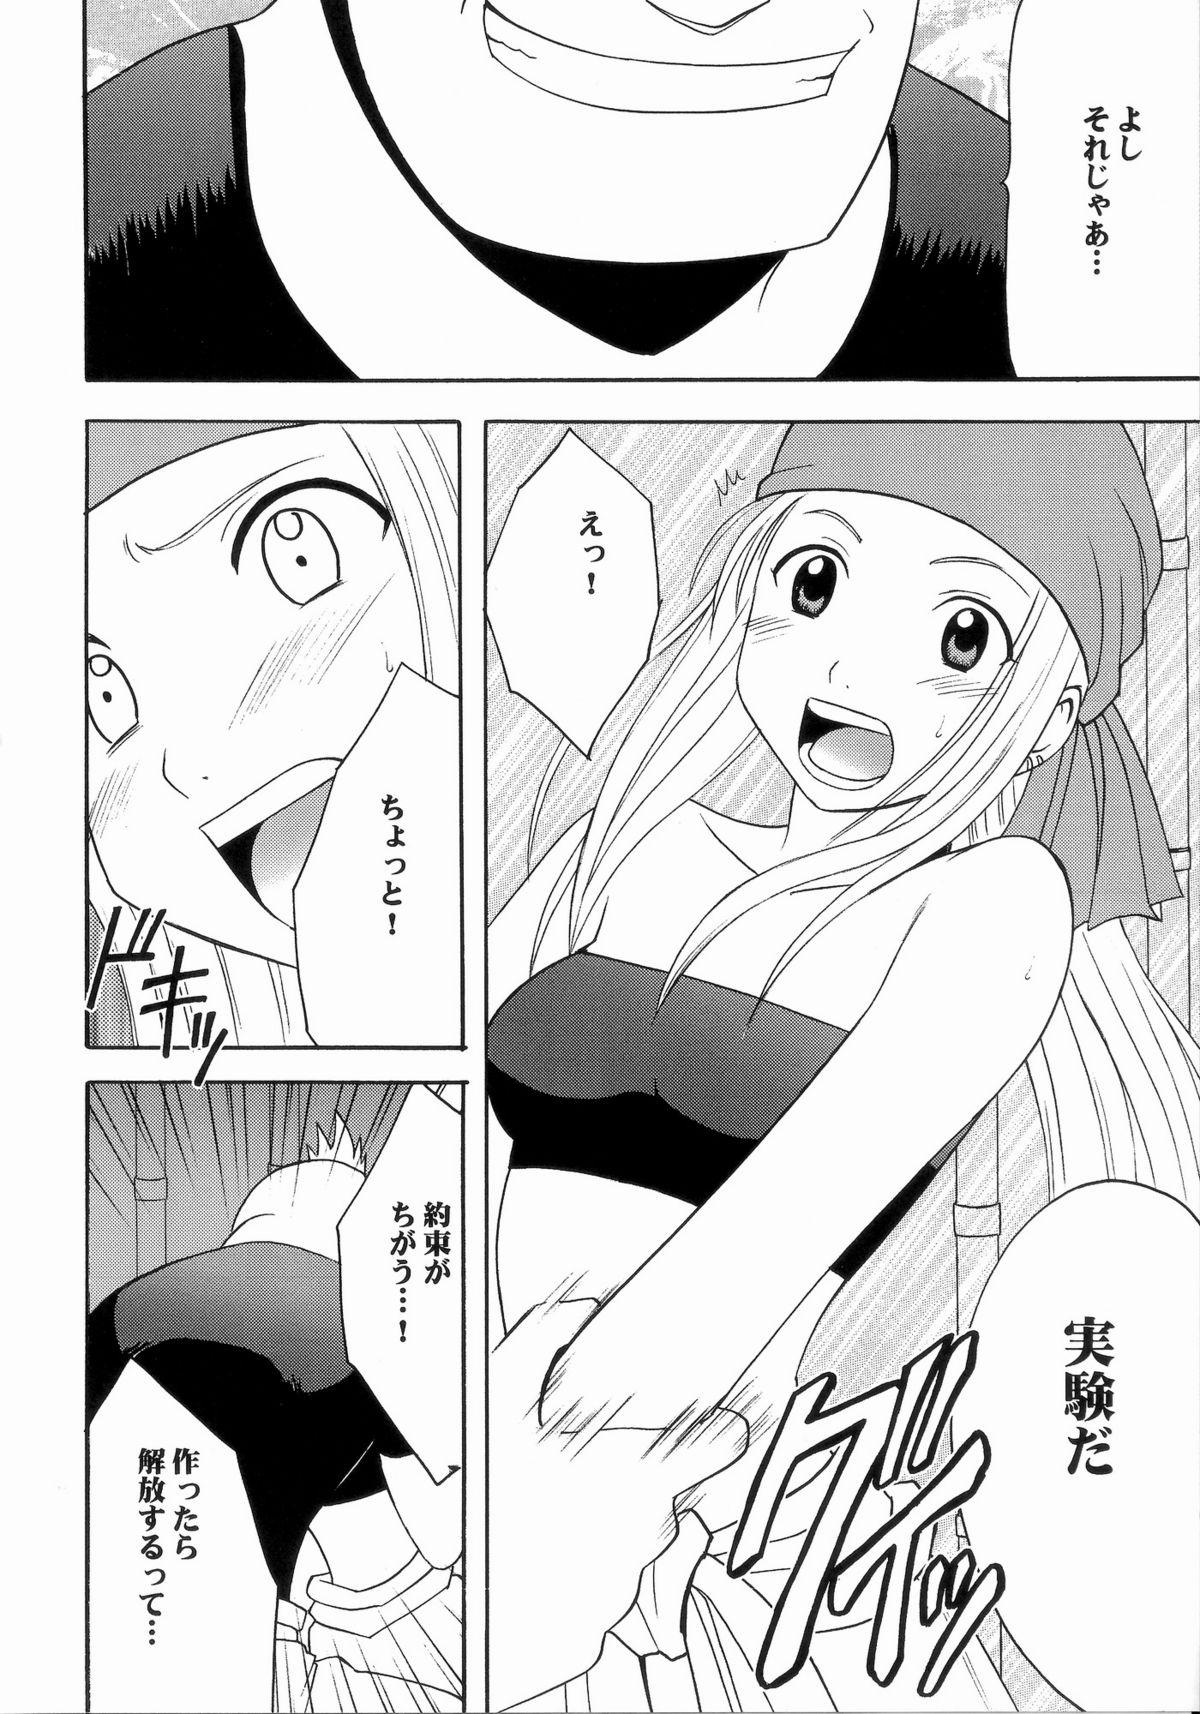 Sexy Fusagareta Deguchi - Fullmetal alchemist Cavalgando - Page 7